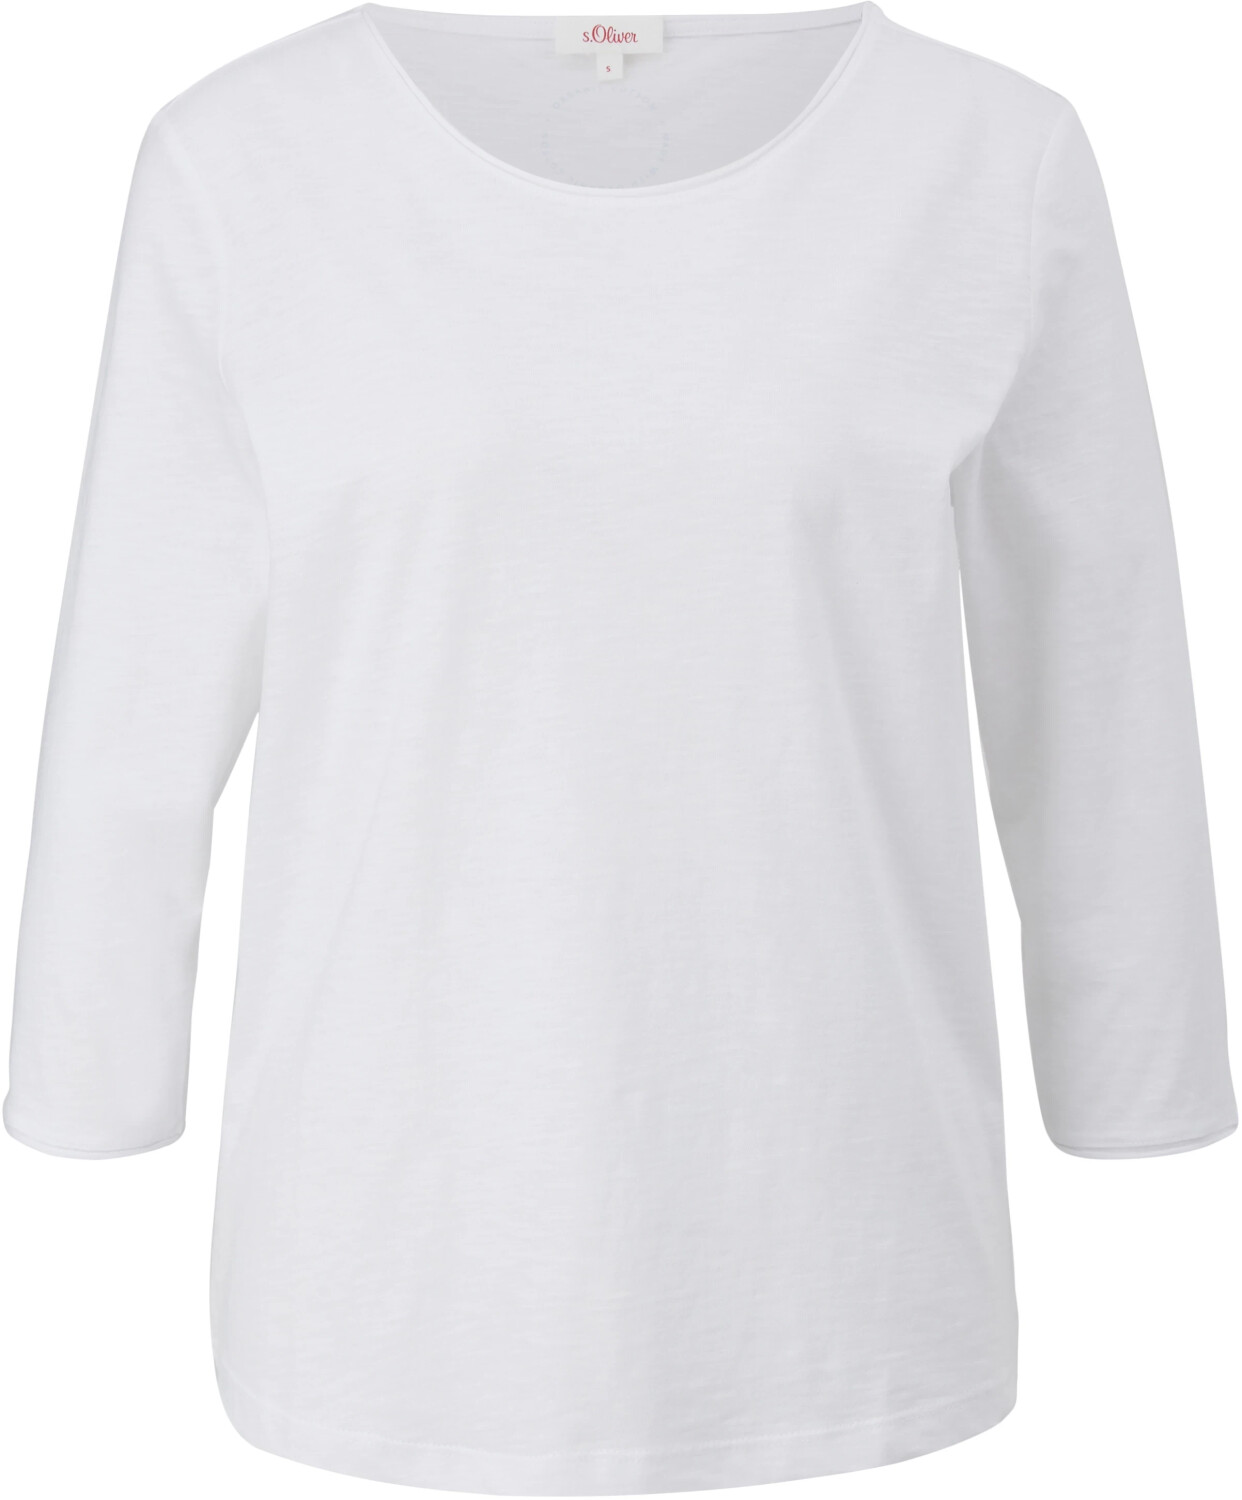 € T-Shirt aus 16,99 bei | S.Oliver Preisvergleich Baumwolle weiß ab (2112026.0100)